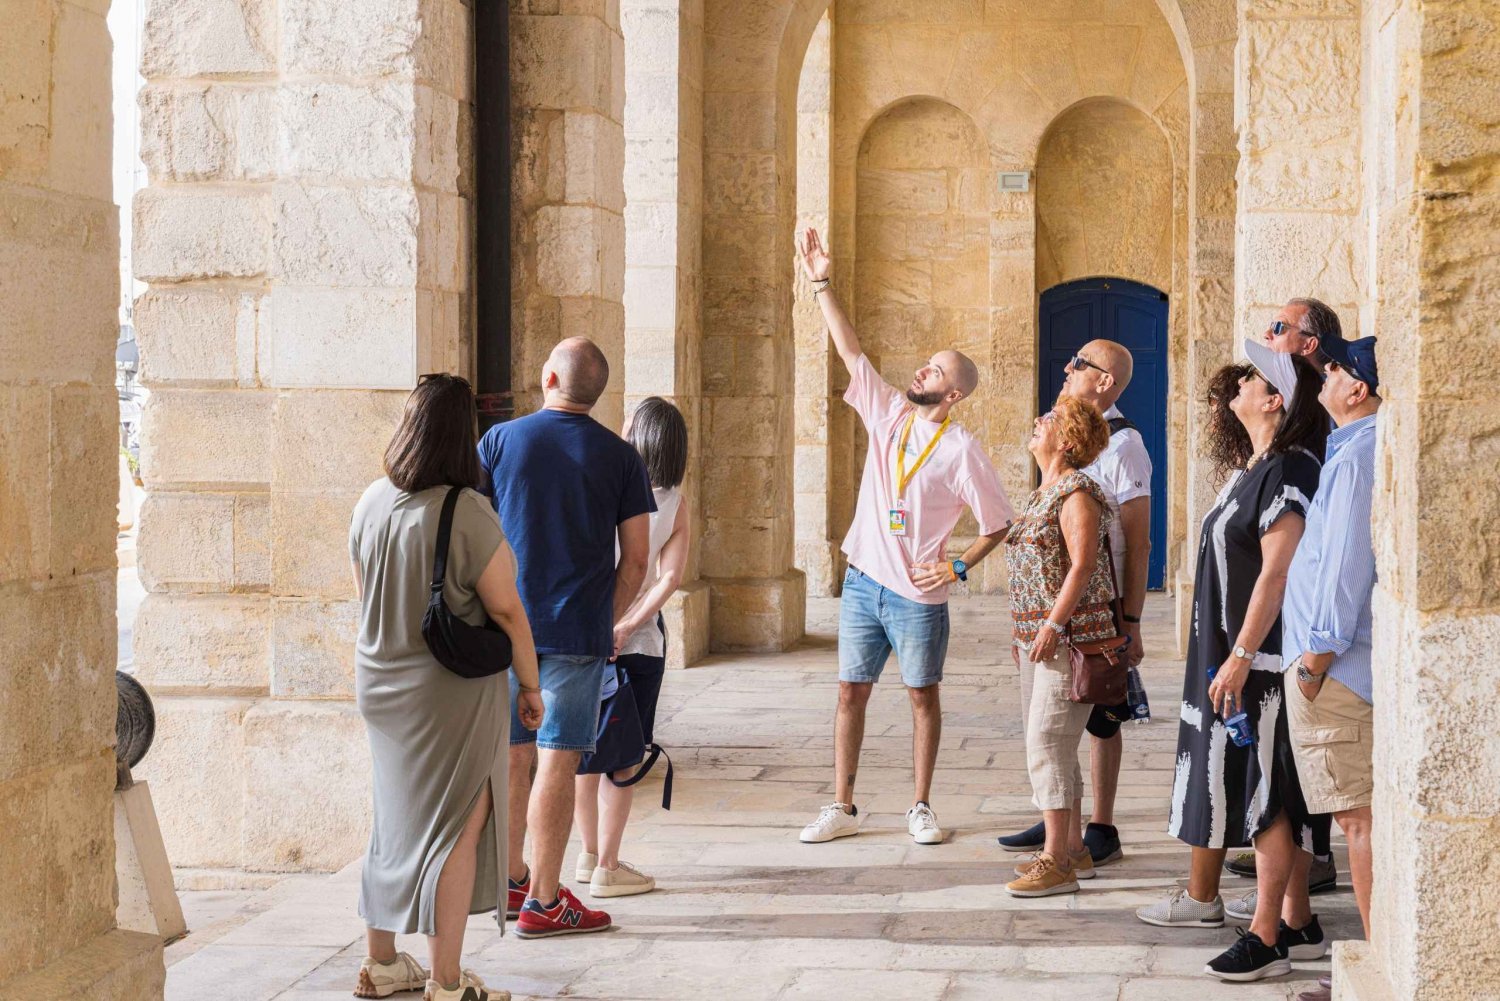 Grupo pequeno: City tour medieval por Mosta, Rabat e Mdina